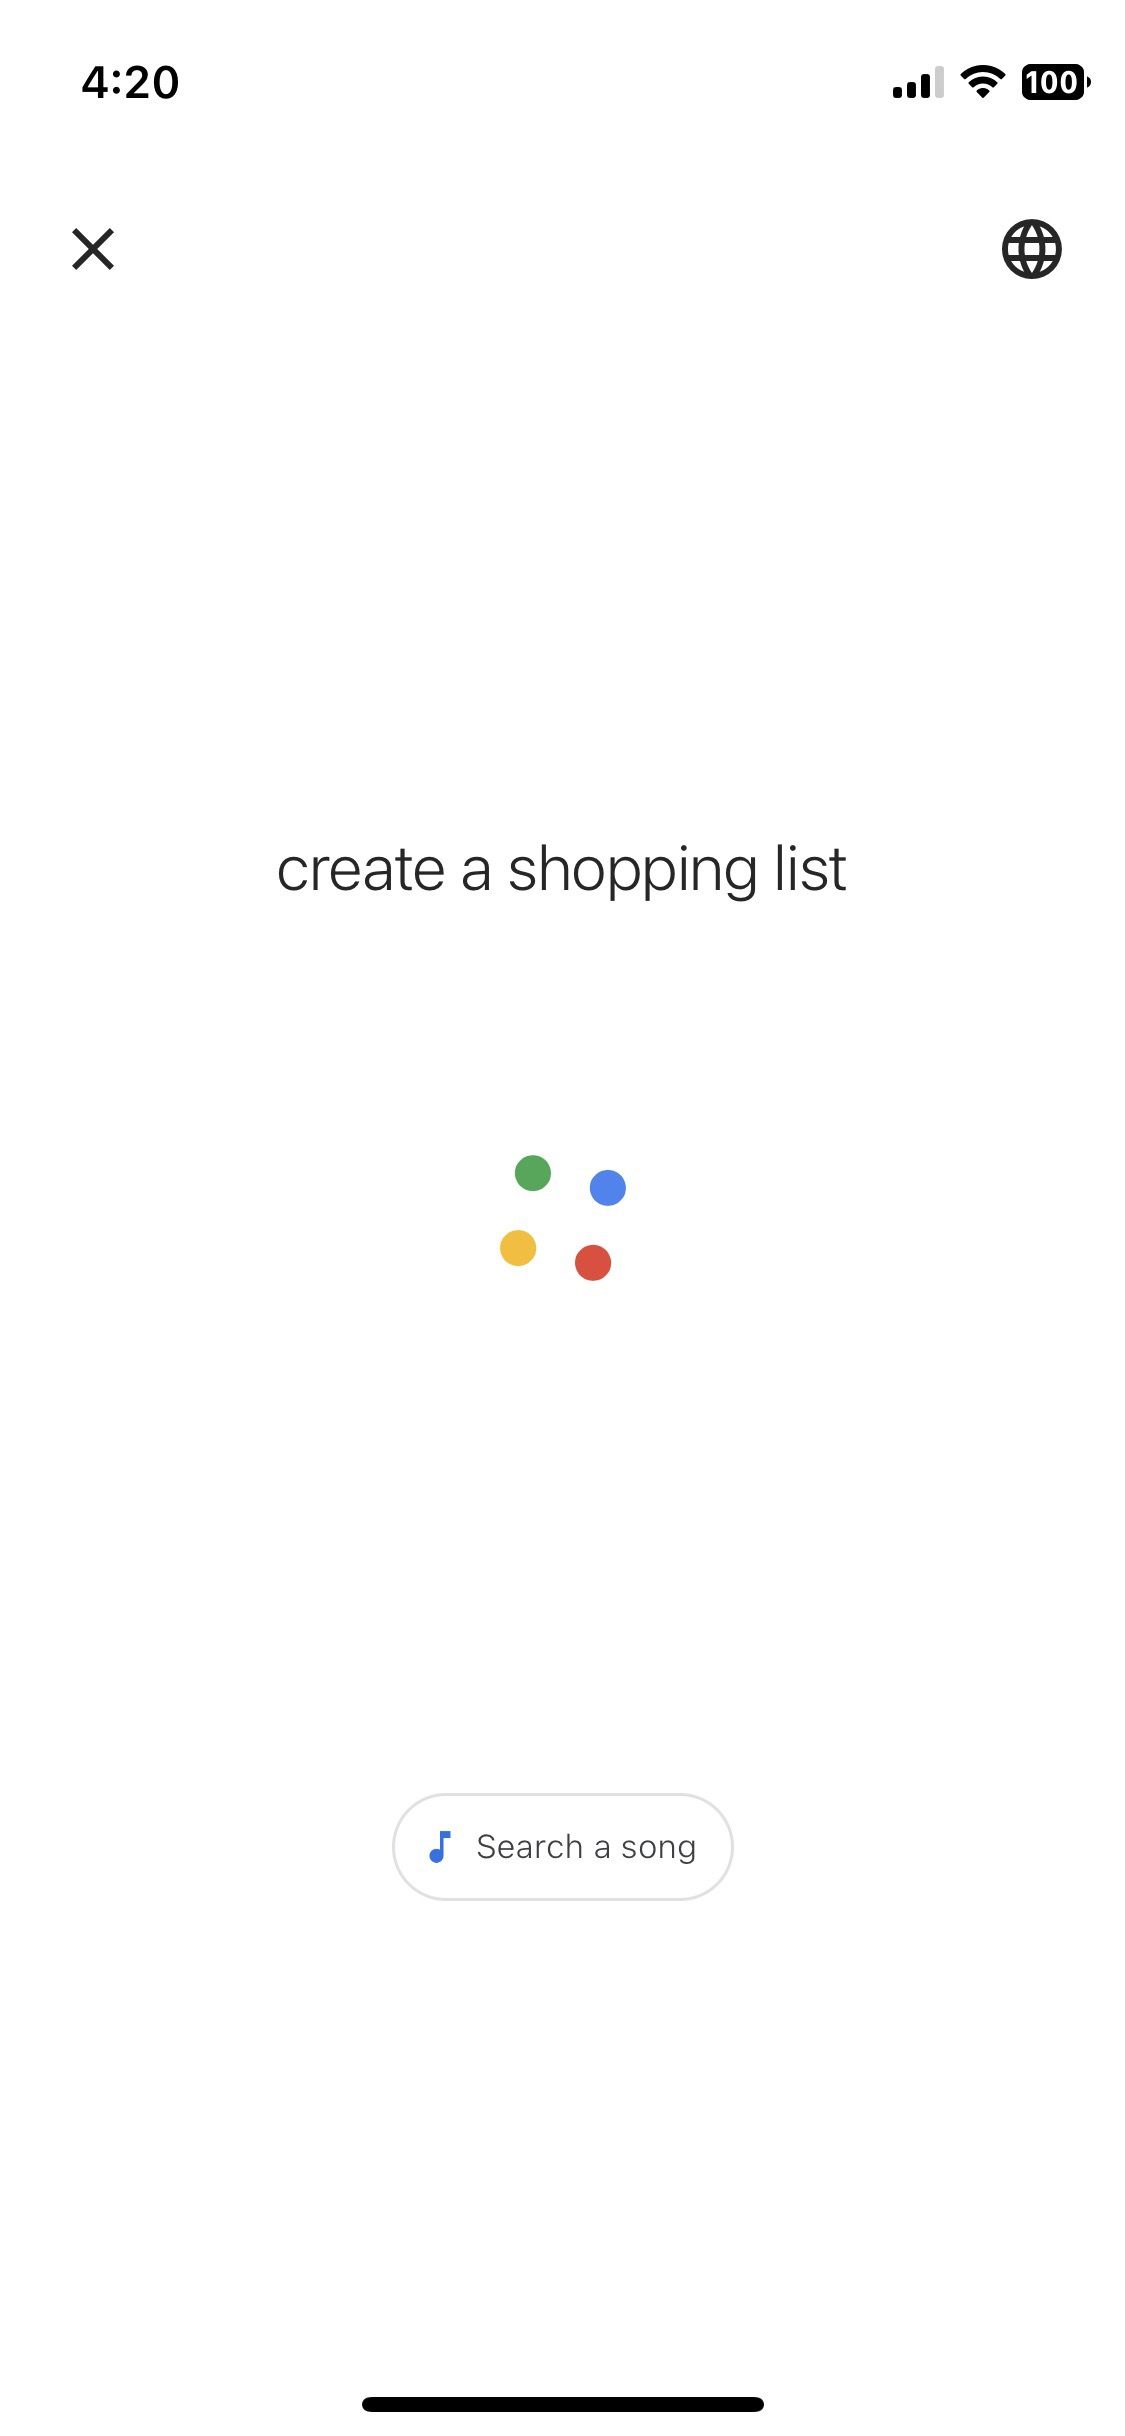 Captura de tela mostrando o uso do Google Assistente para criar uma lista de compras